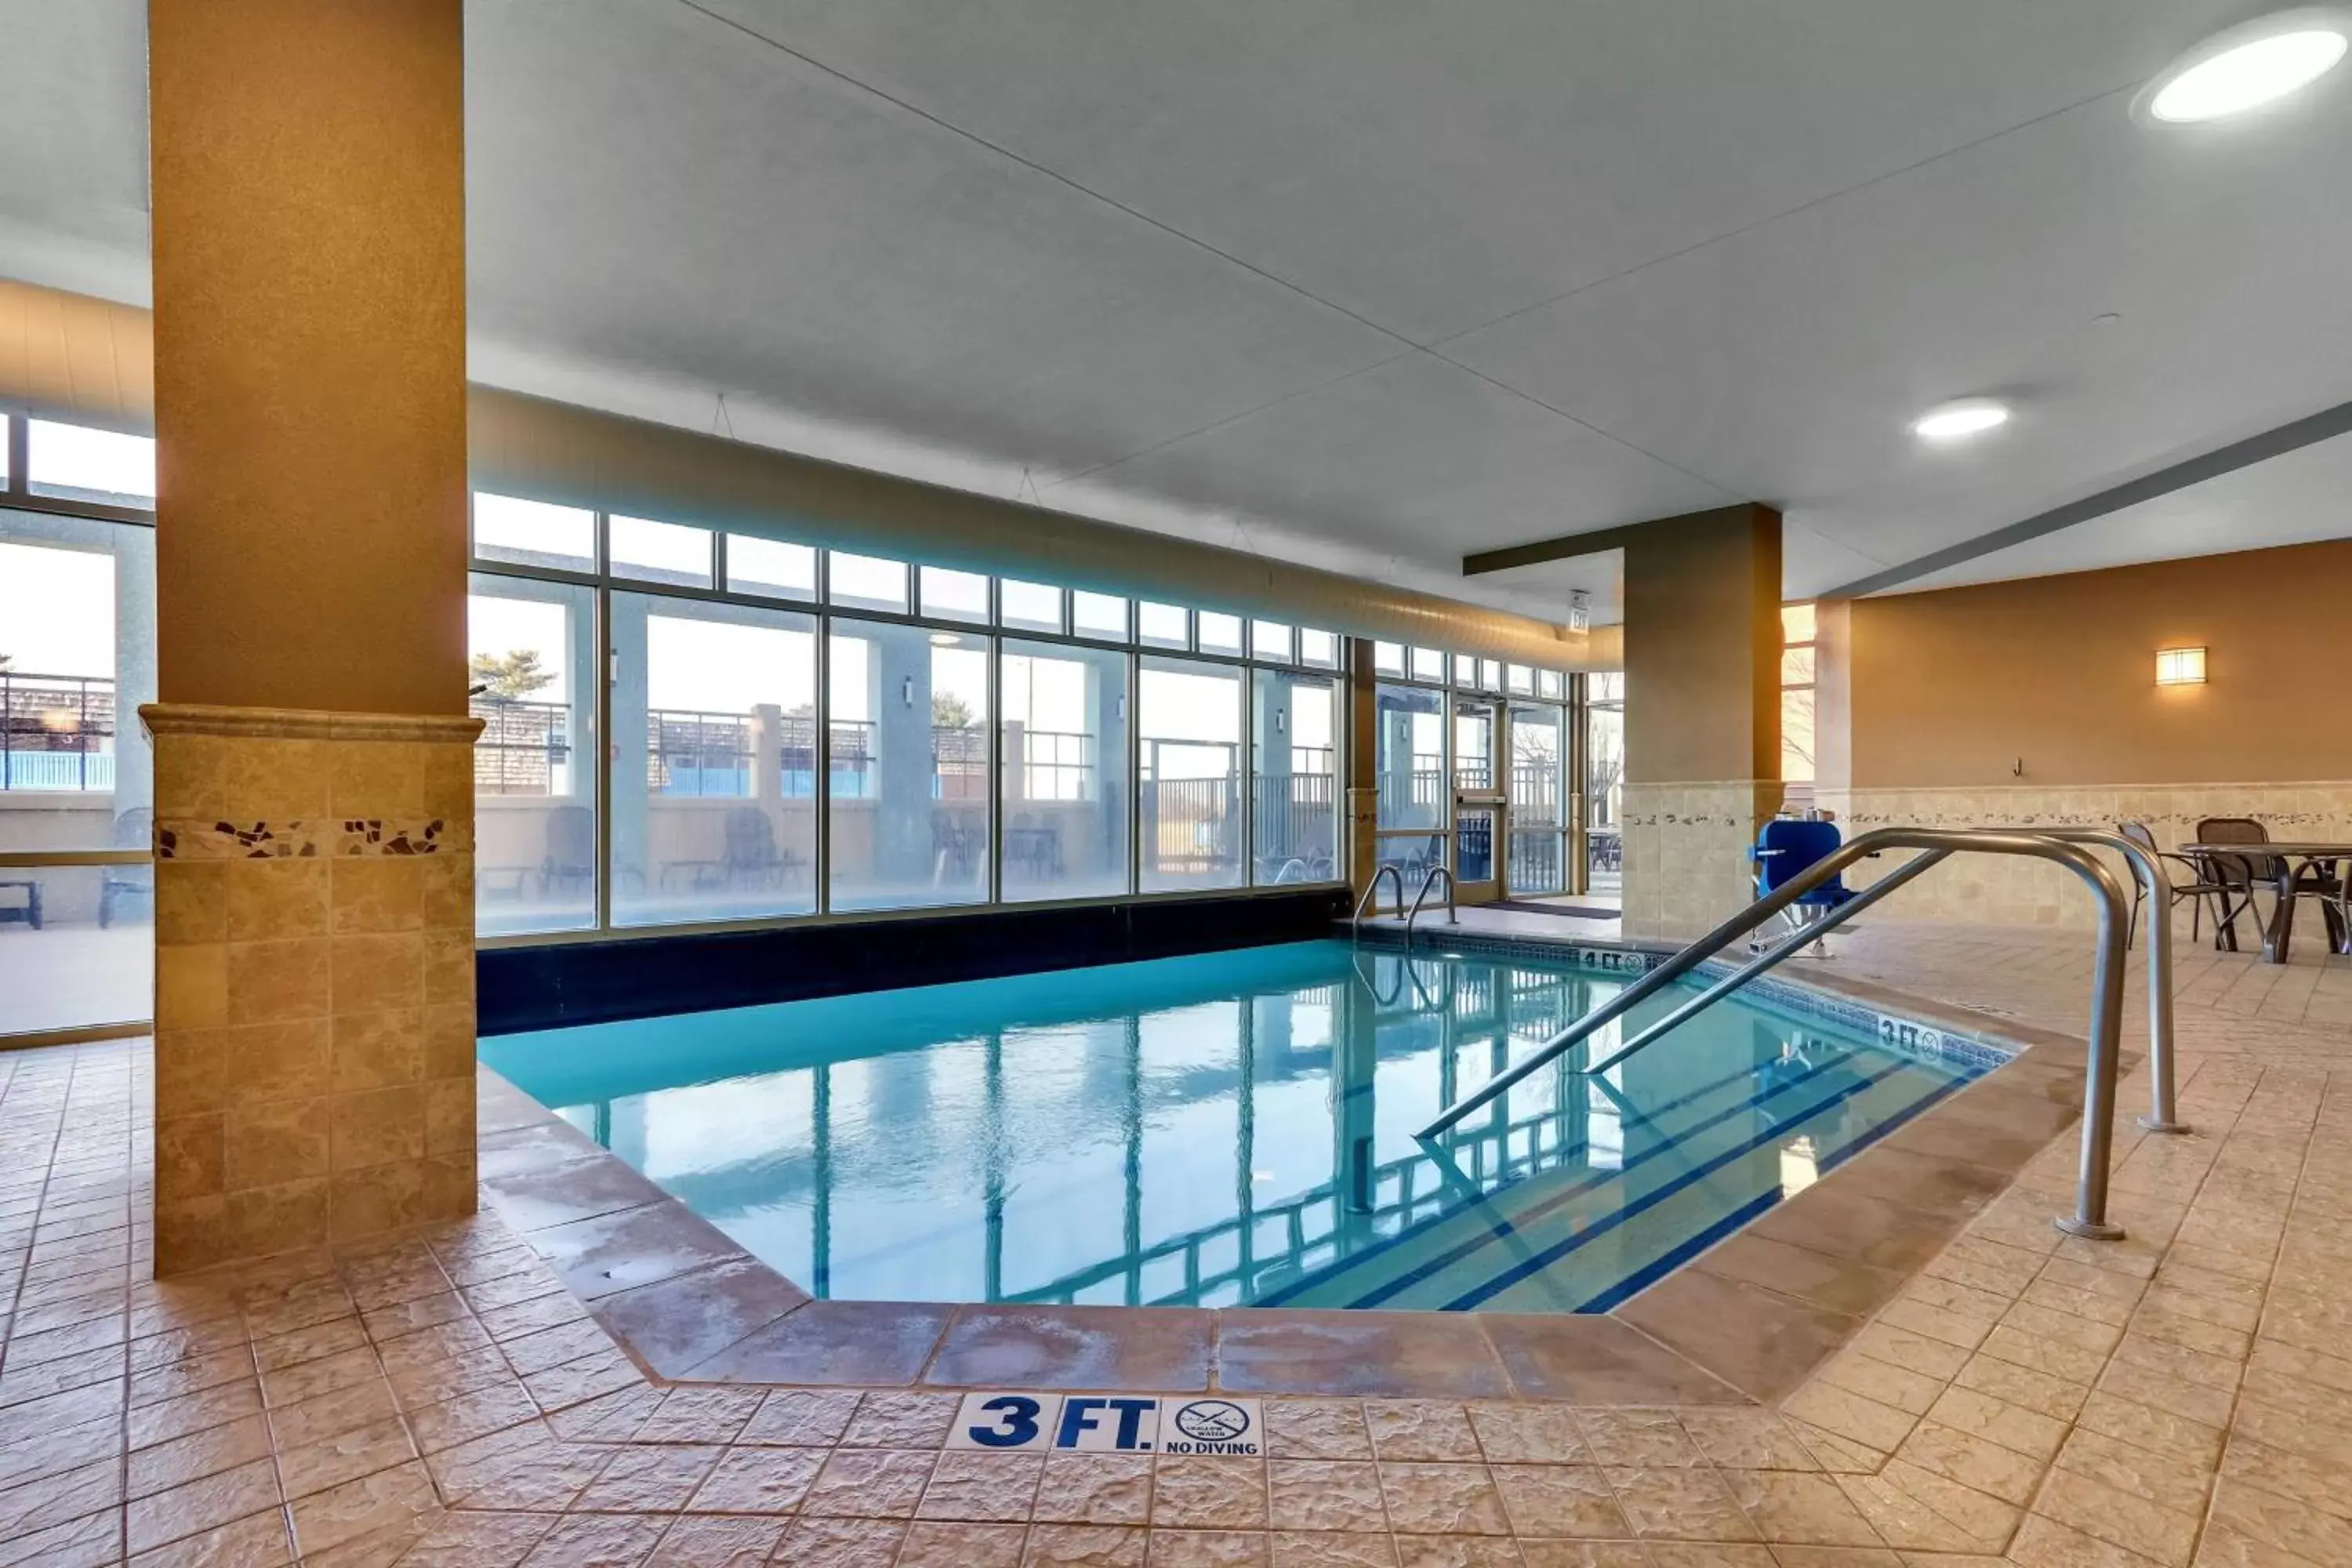 Pool view, Swimming Pool in Drury Inn & Suites Sikeston